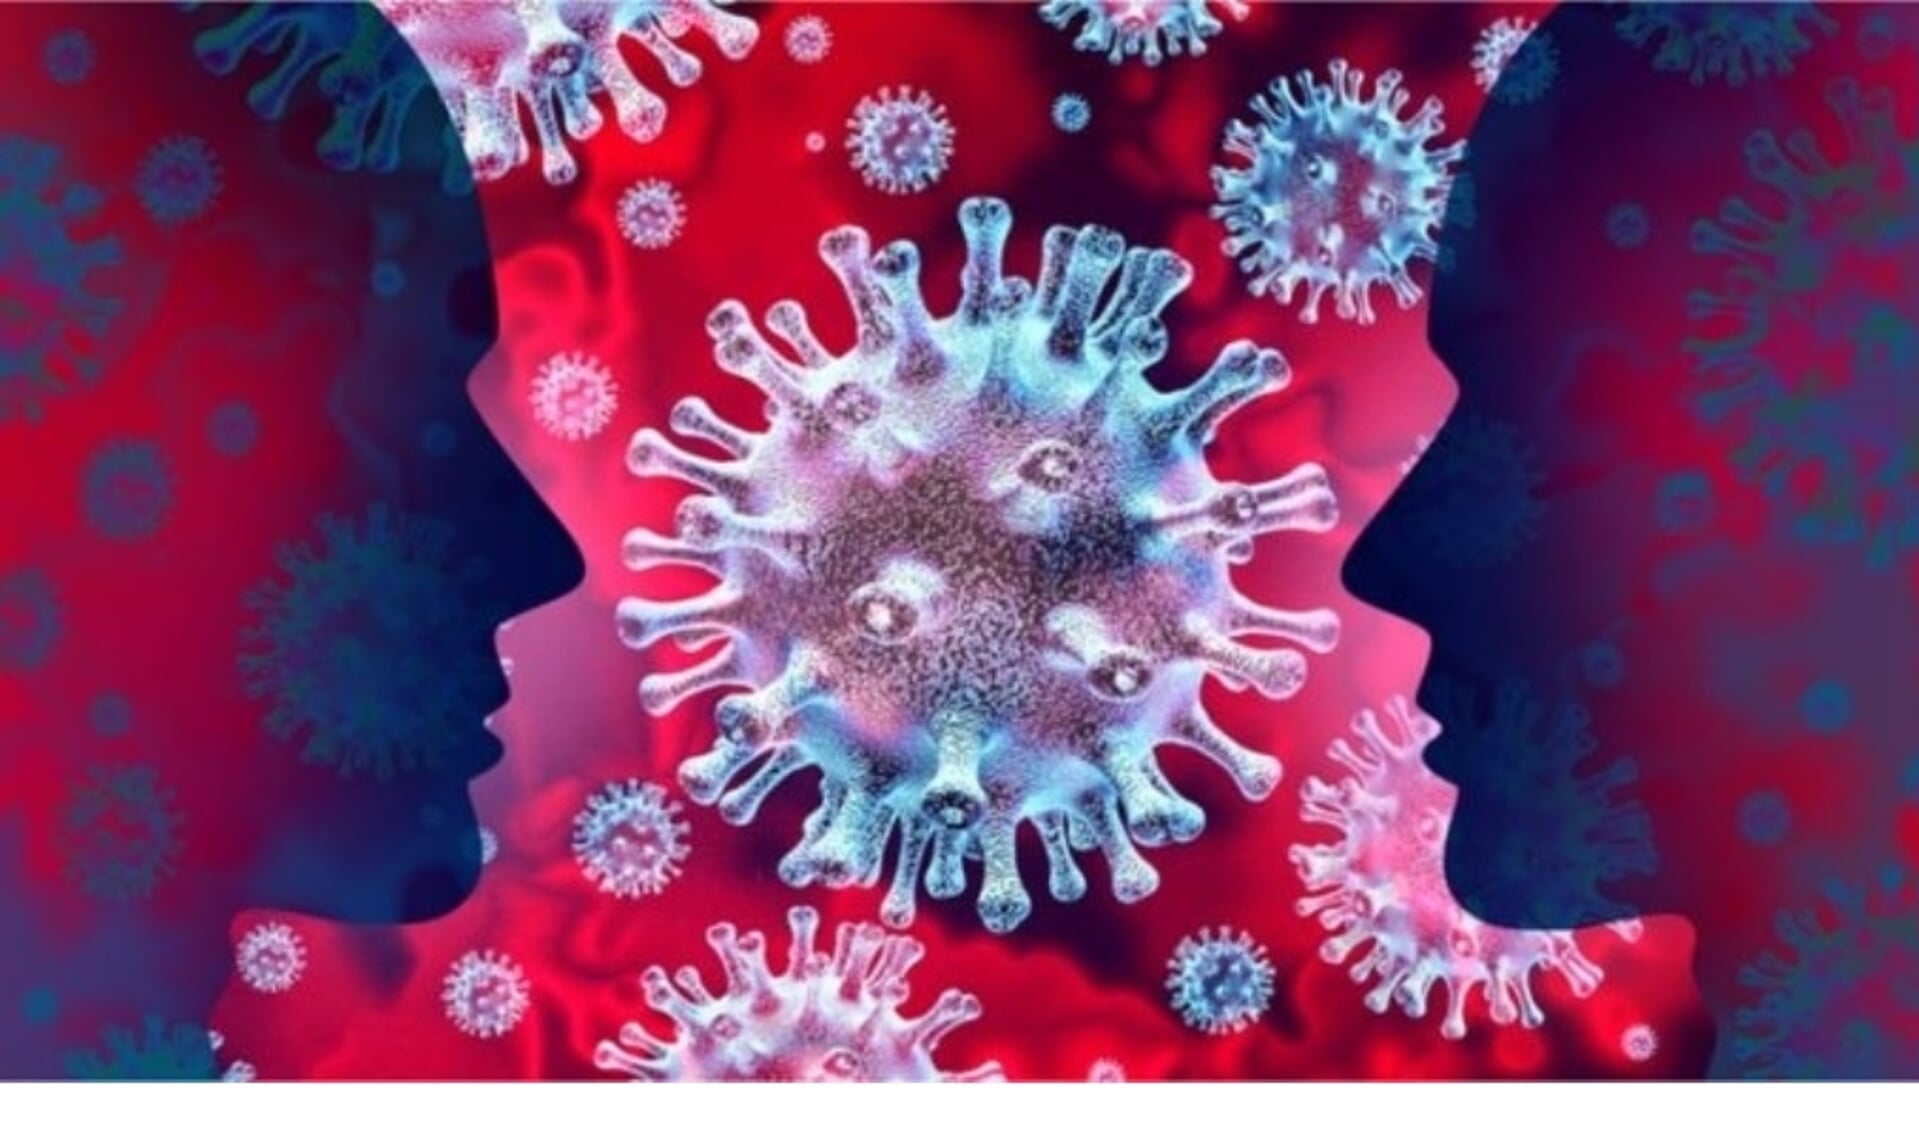 De veiligheidsregio heeft een nieuwe noodverordening opgesteld i.v.m. het coronavirus.